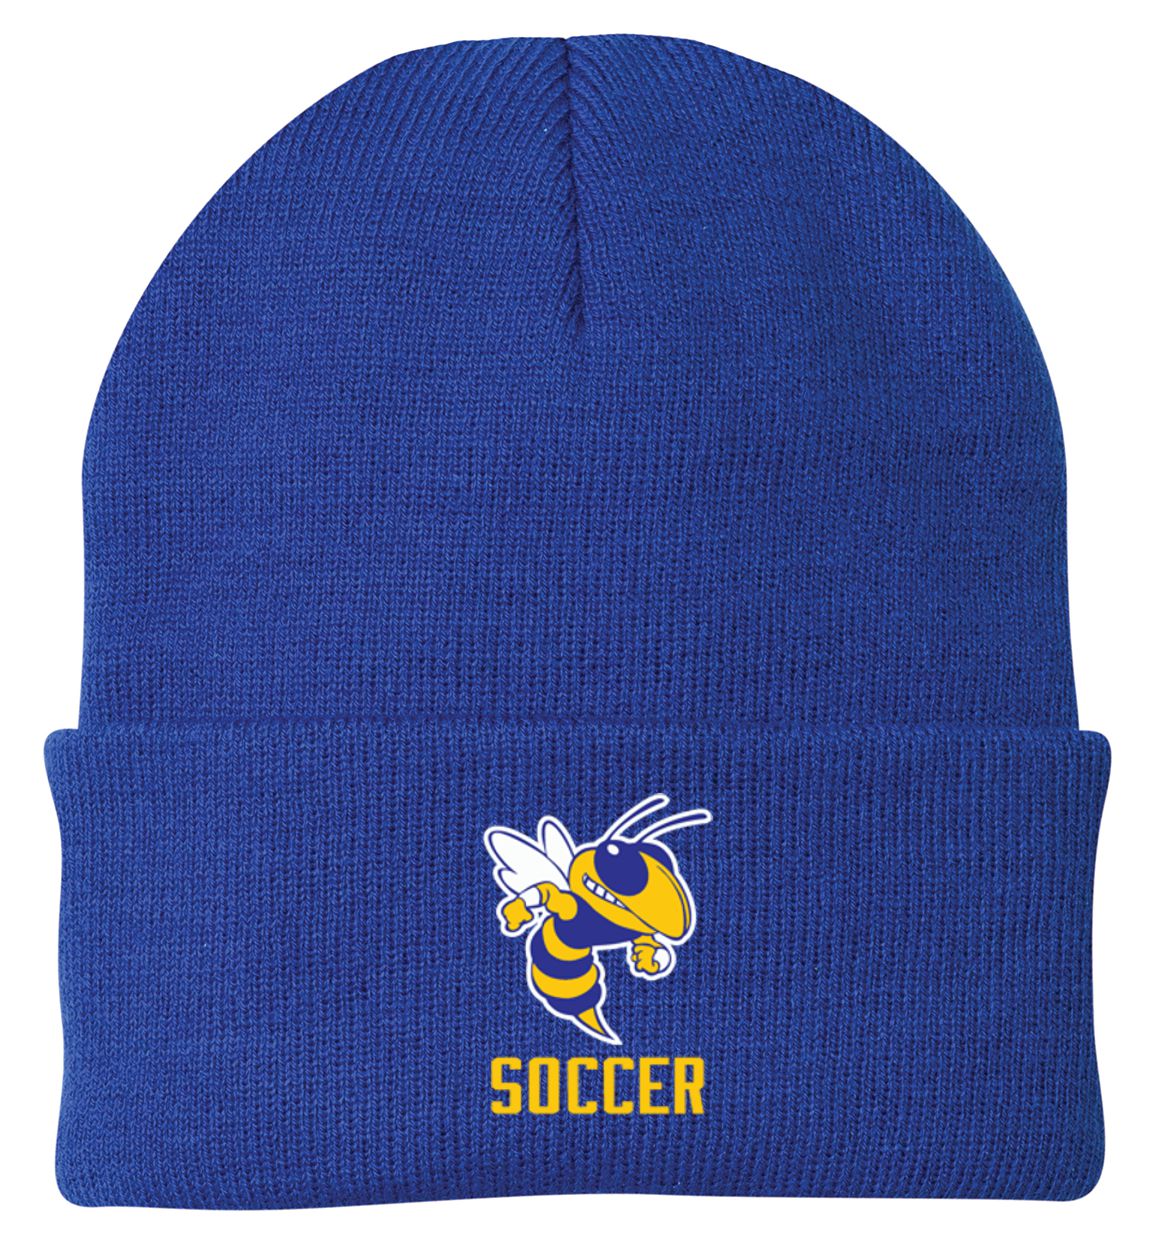 Kearsley Soccer Knit Cap